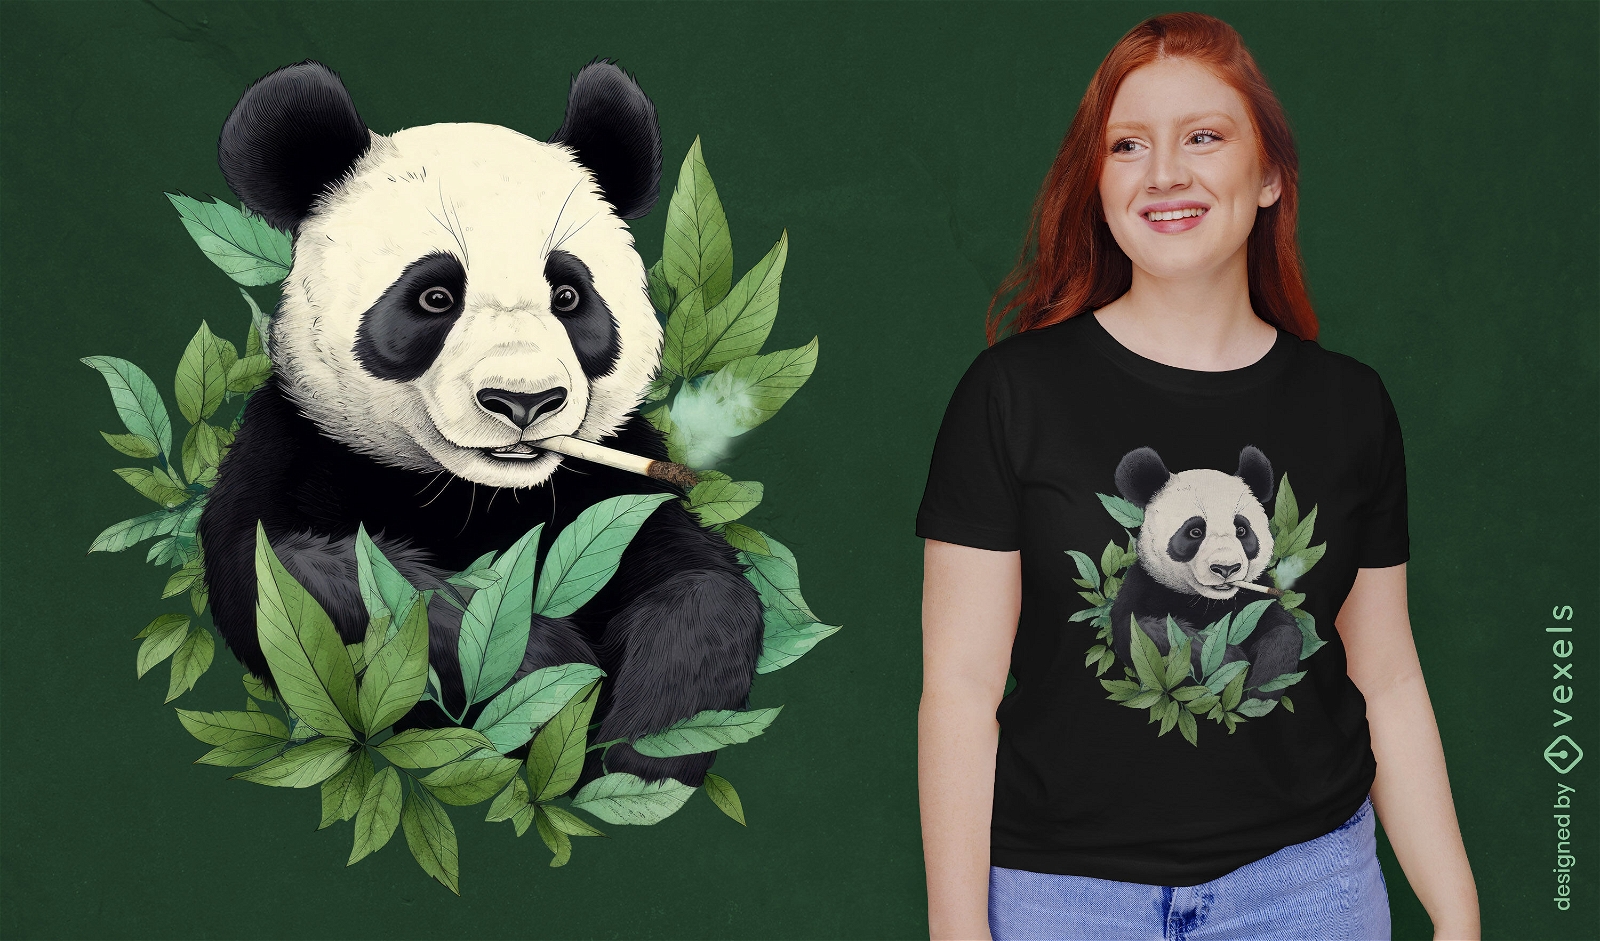 Dise?o de camiseta para fumar oso panda.